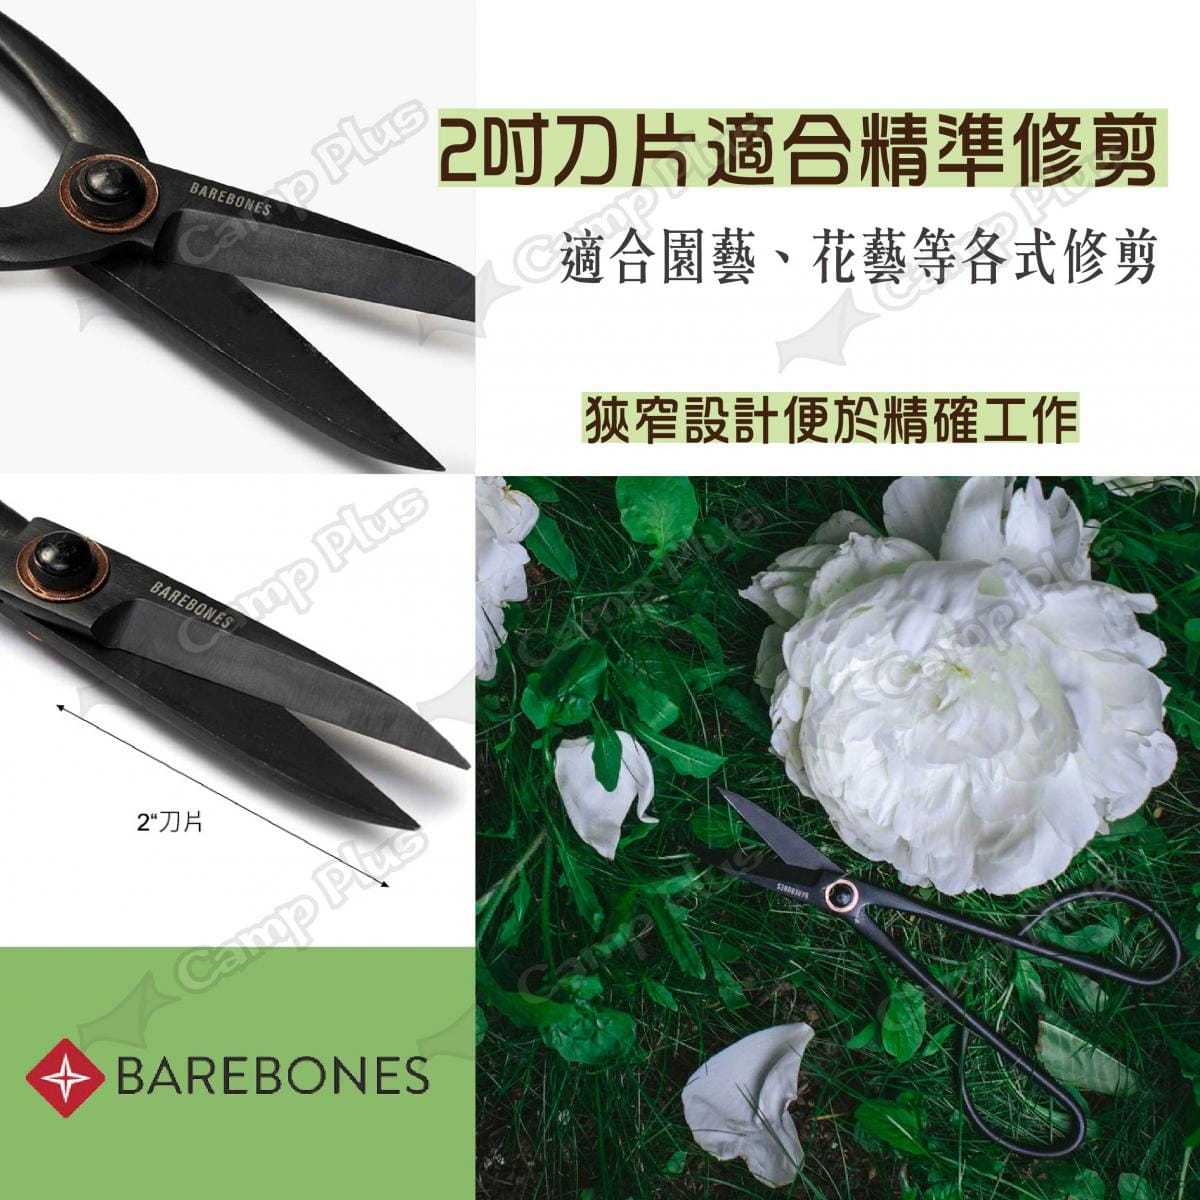 【Barebones】2吋工匠修枝剪刀 GDN-049 (悠遊戶外) 2